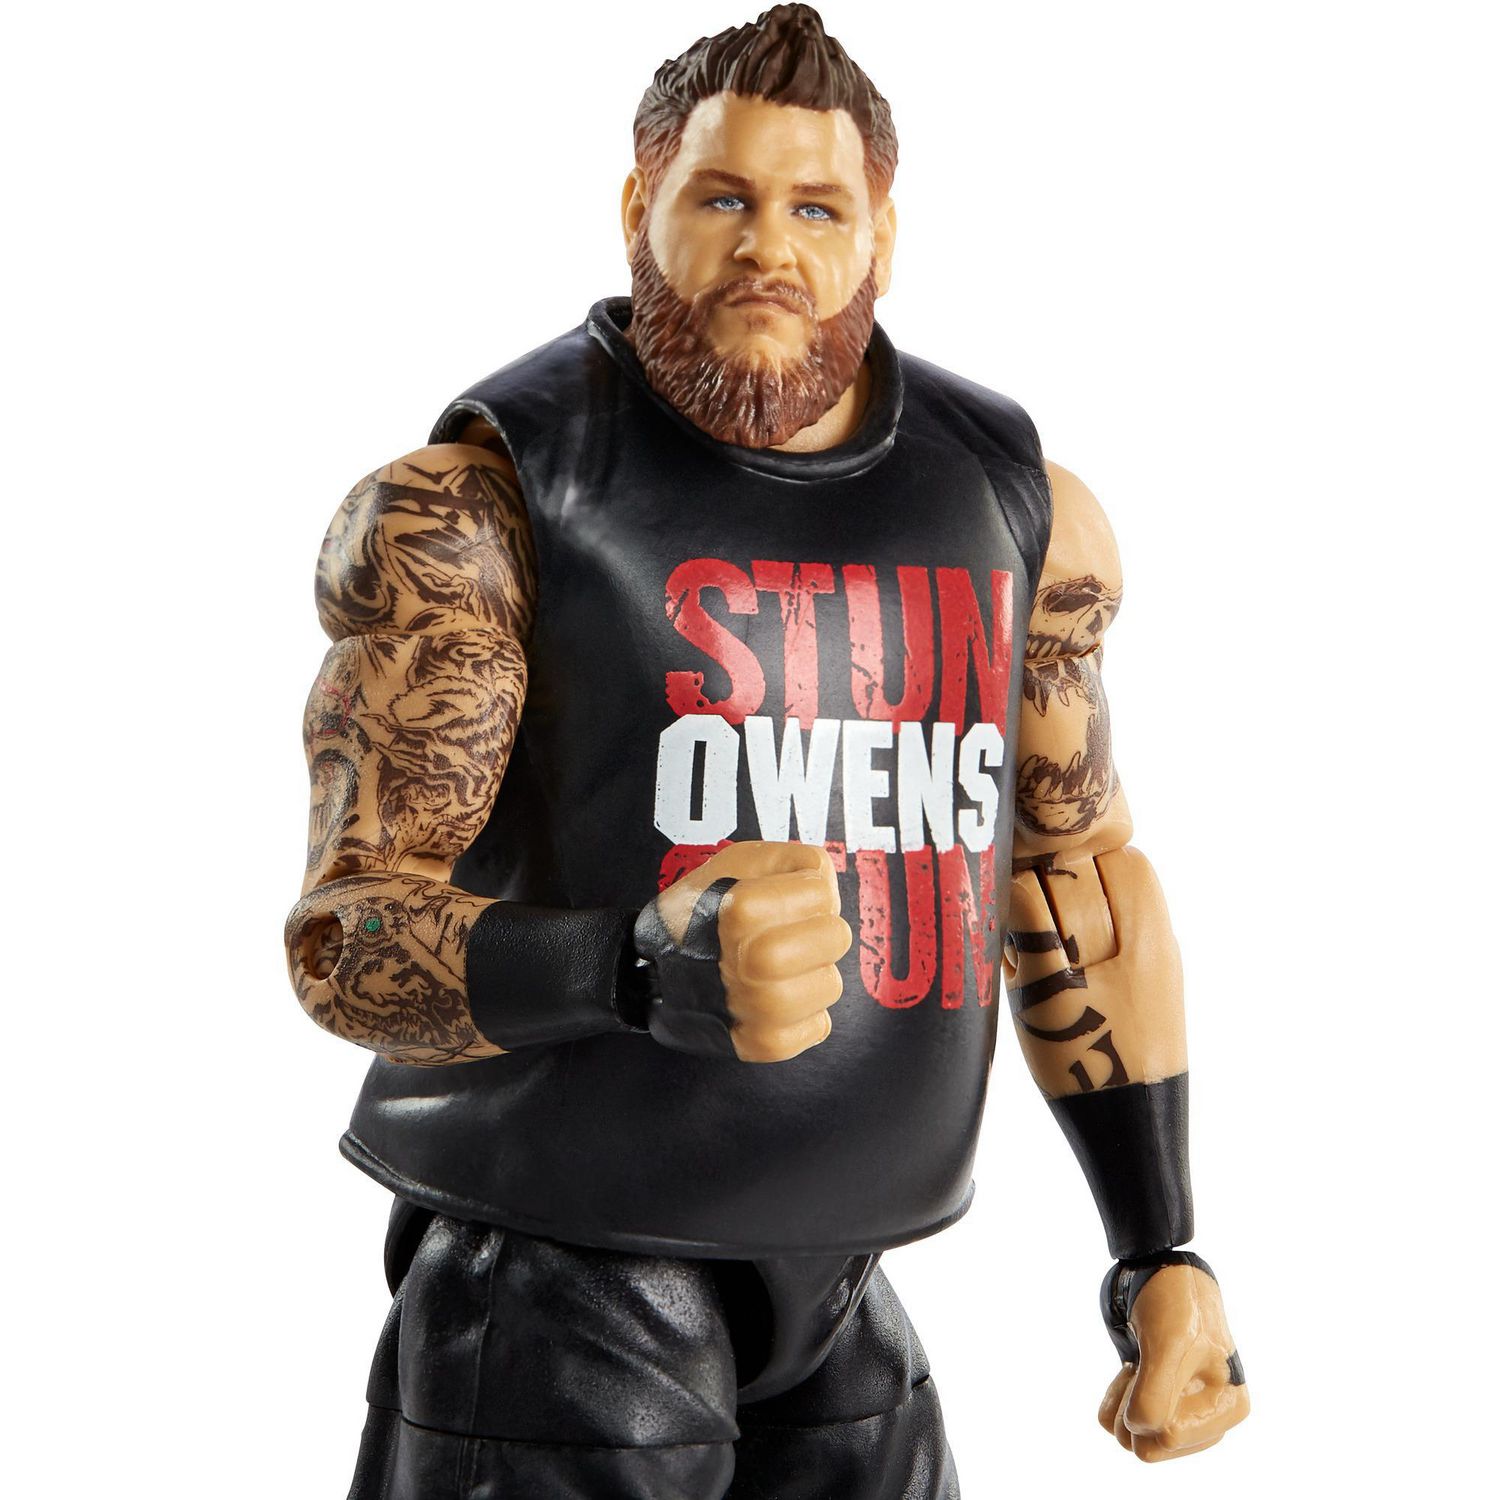 WWE Figurine Articulée Kevin Owens De La Collection Élite Avec Acce